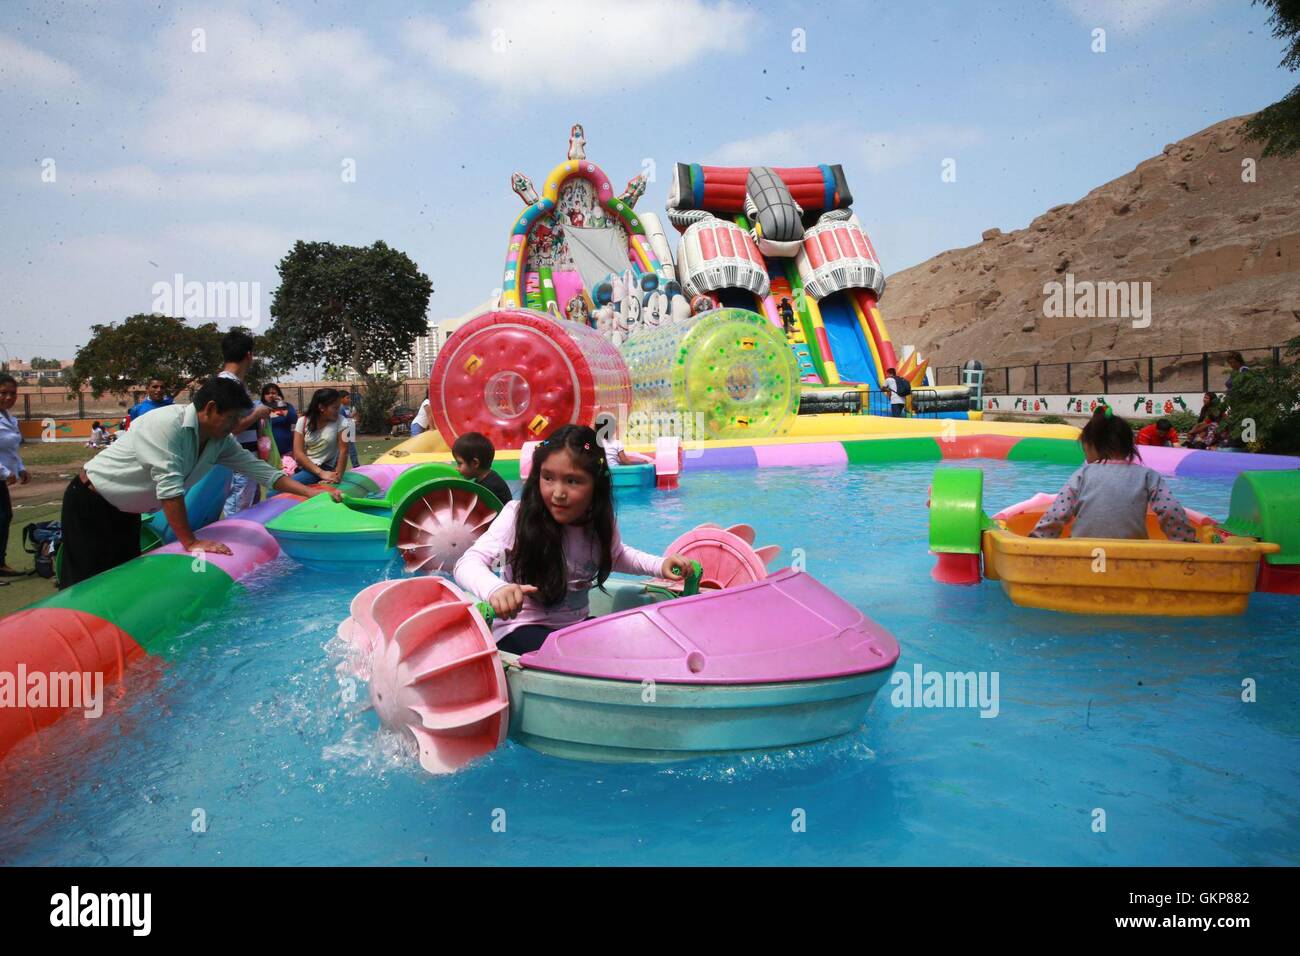 alcanzar elefante marxismo Lima. 21 Aug, 2016. Los niños disfrutan de juegos de agua en un parque de  diversiones en Lima, capital de Perú, del 21 de agosto, 2016, el Día de los  niños del